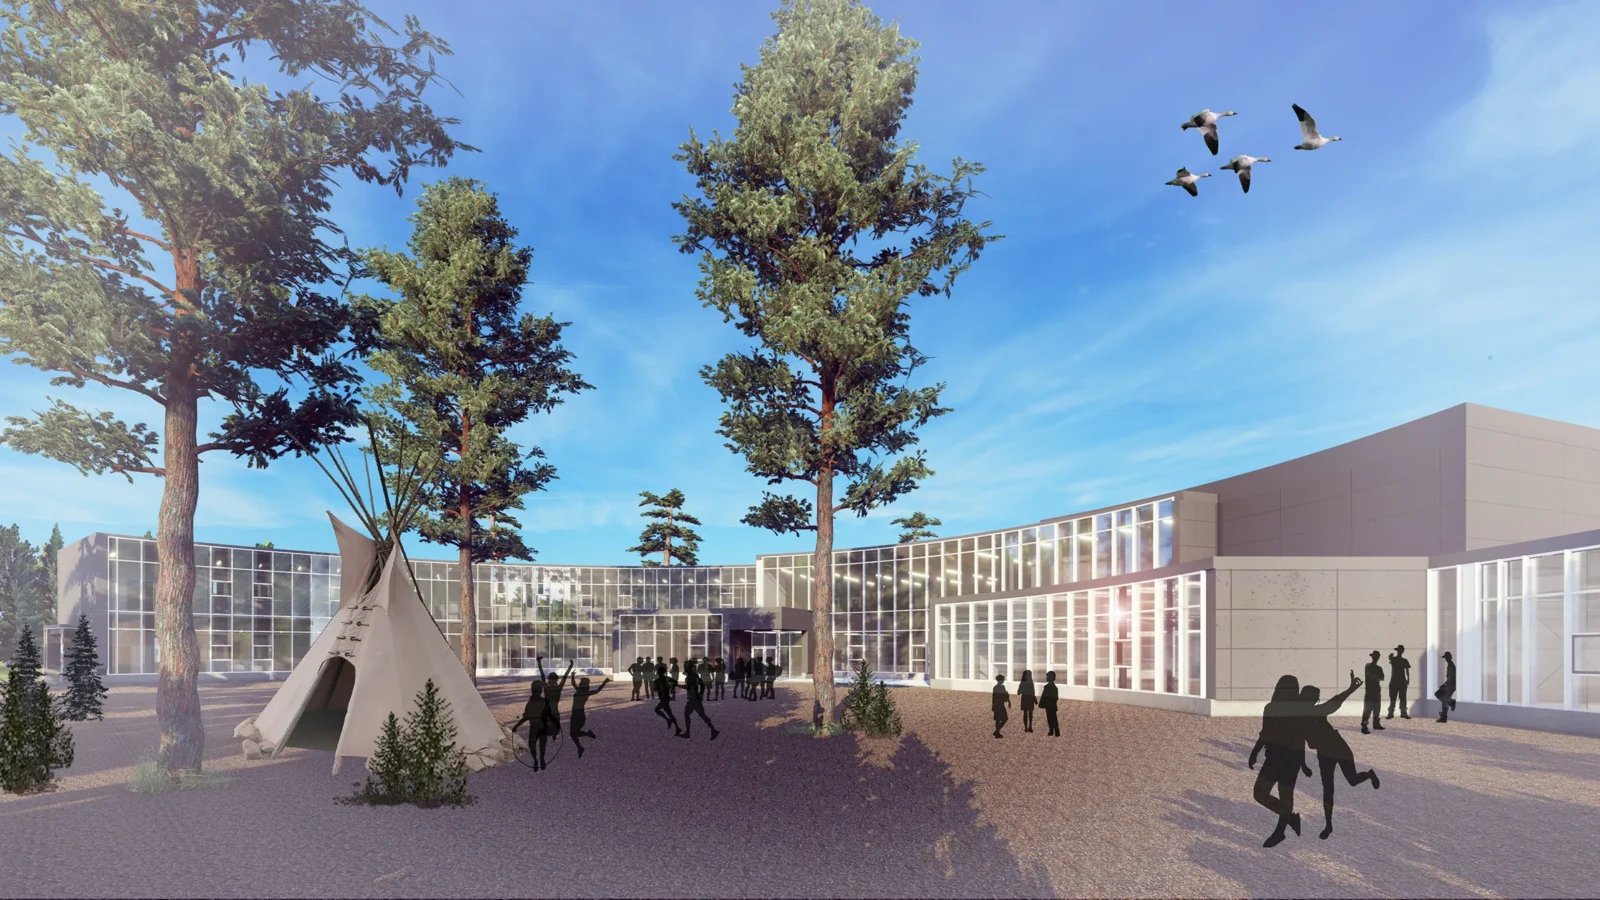 Rendu architectural 3D de l'école primaire Lac Barrière avec un tipi et des silhouettes dans la cour